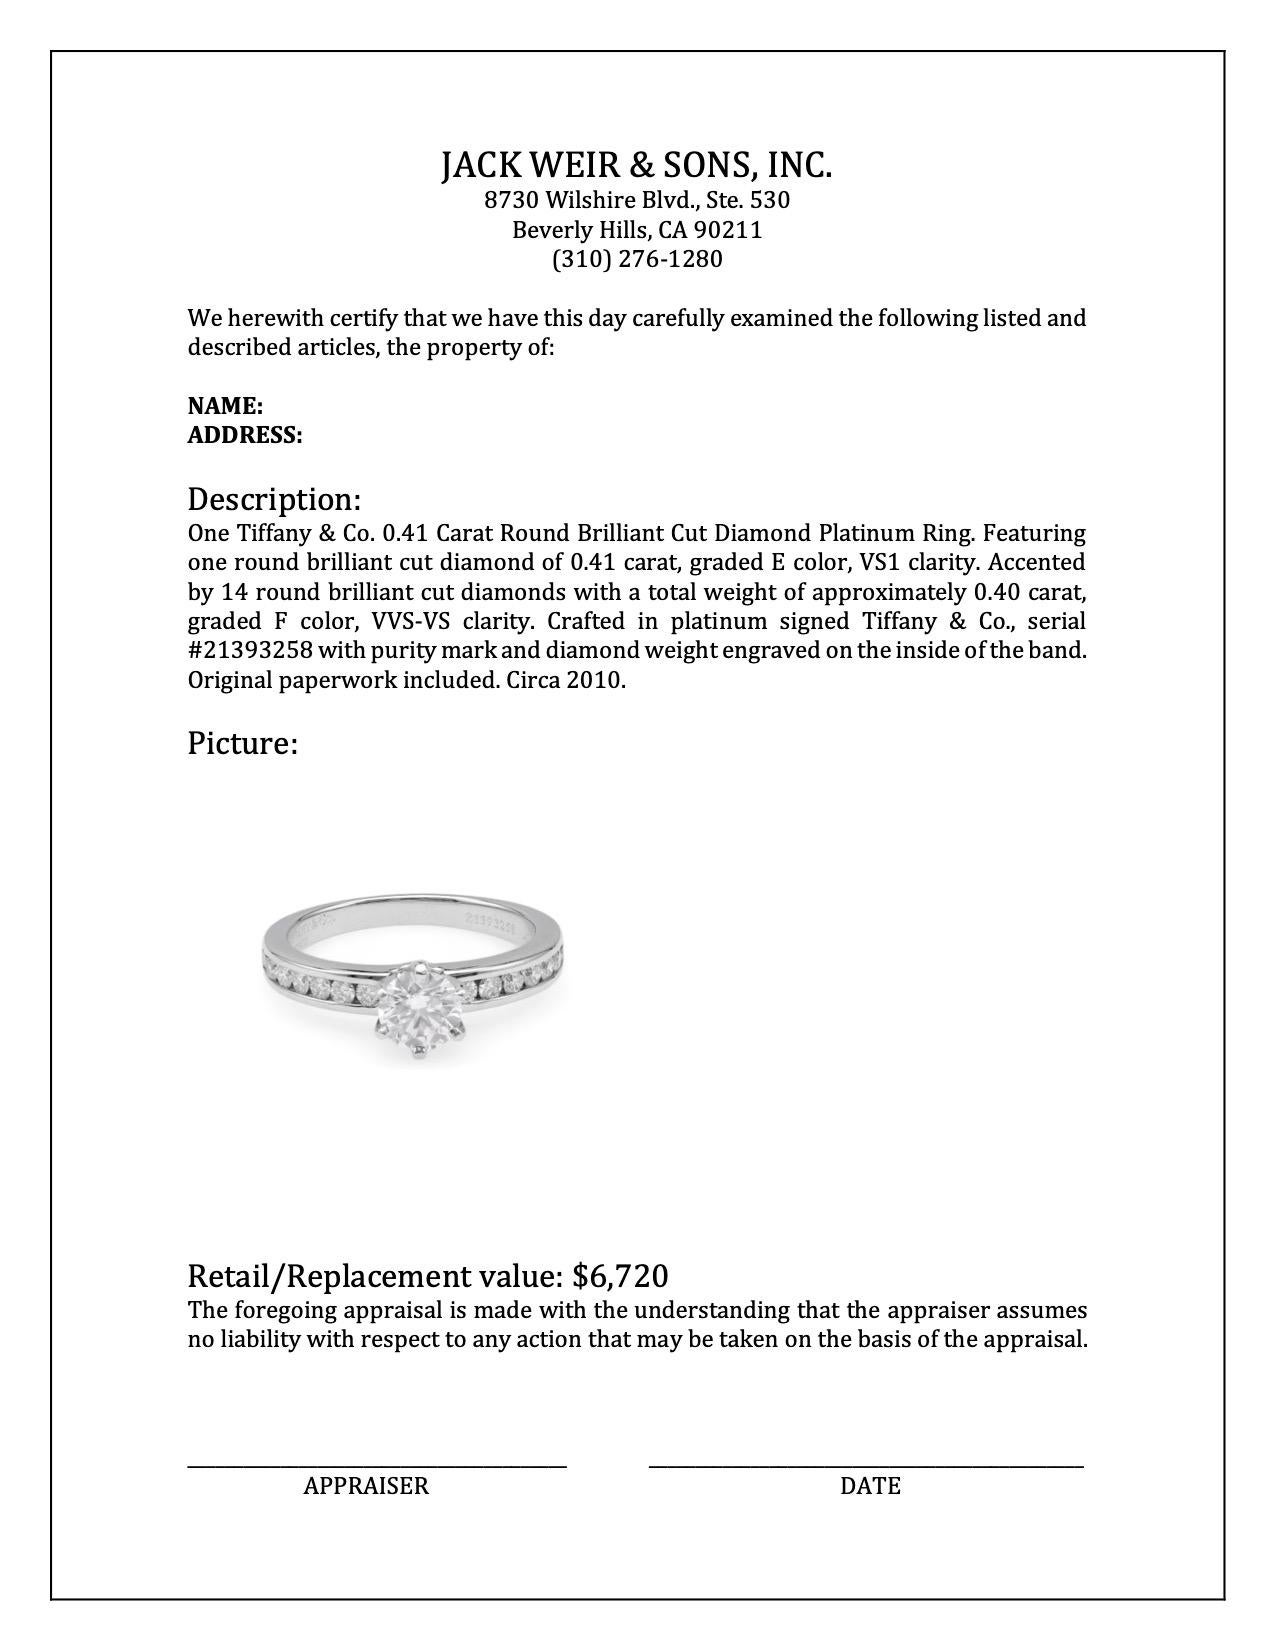 Tiffany & Co. 0.41 Carat Round Brilliant Cut Diamond Platinum Ring 1